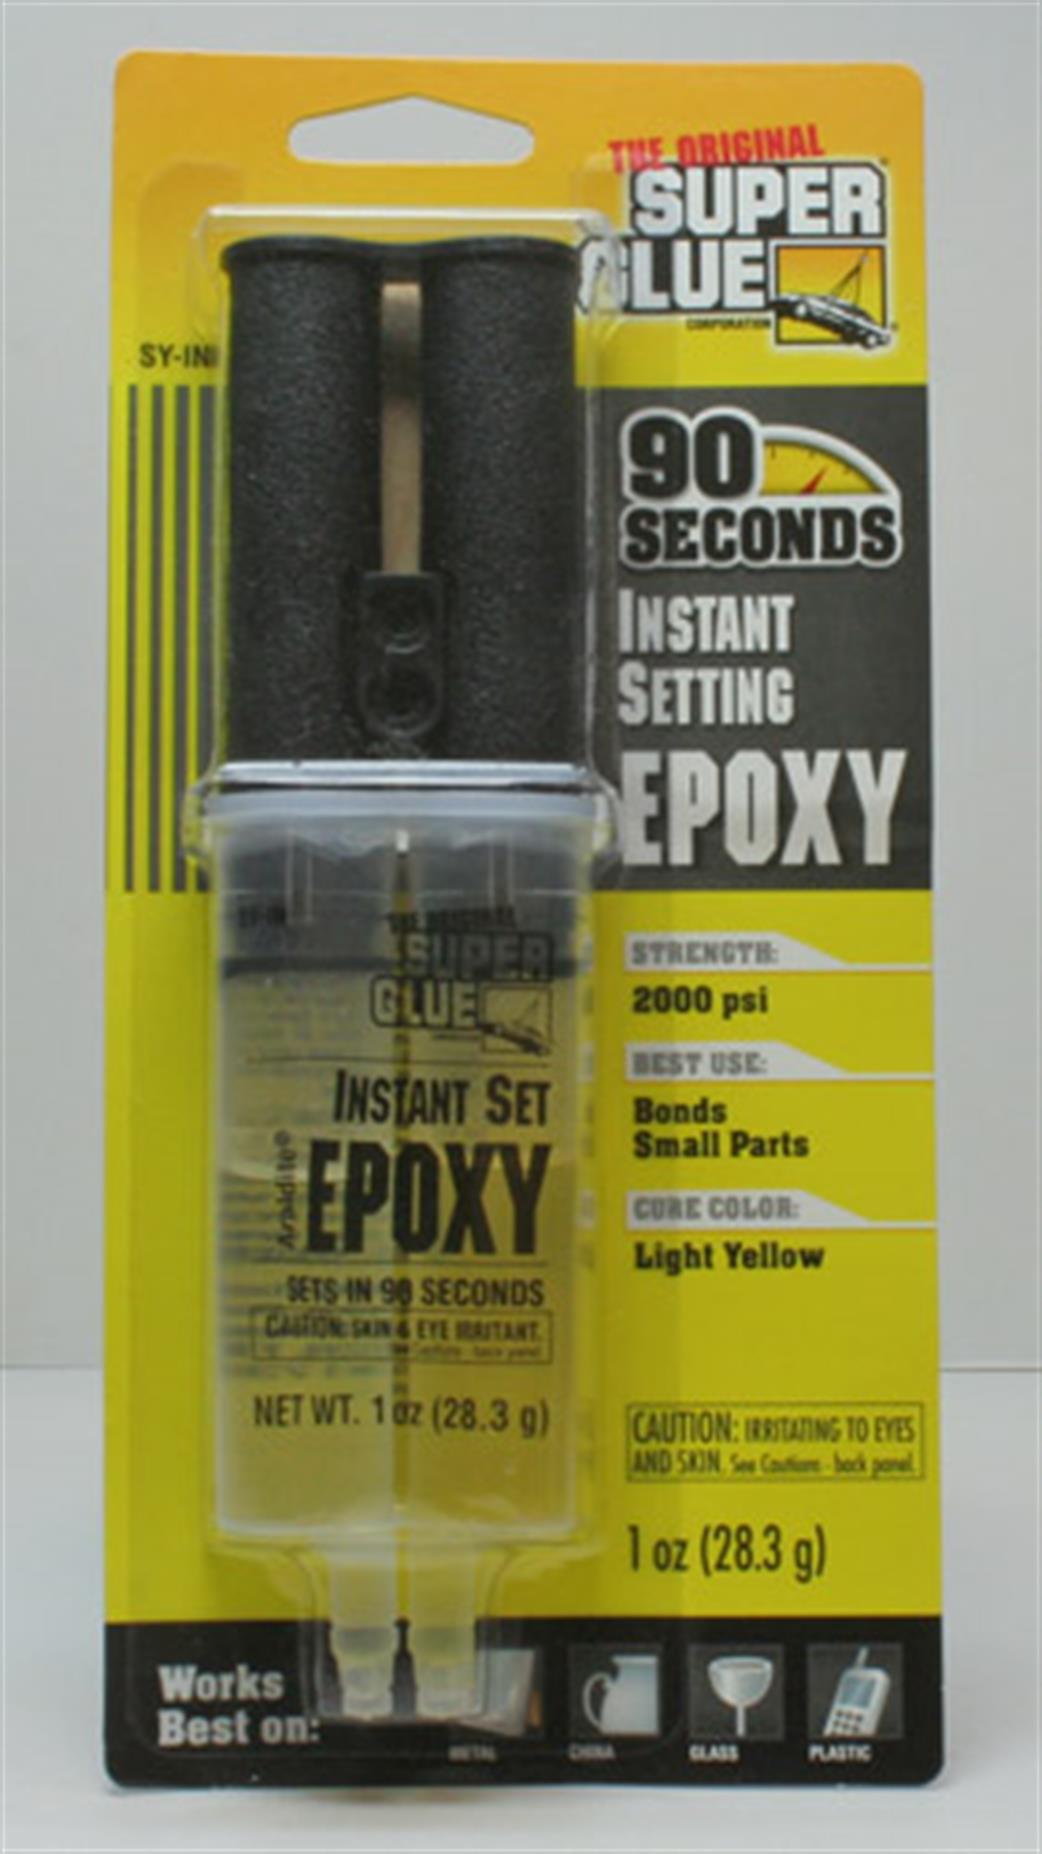 Vitalbond  SY-IN 90 second 2-Part Epoxy 25ml Syringes